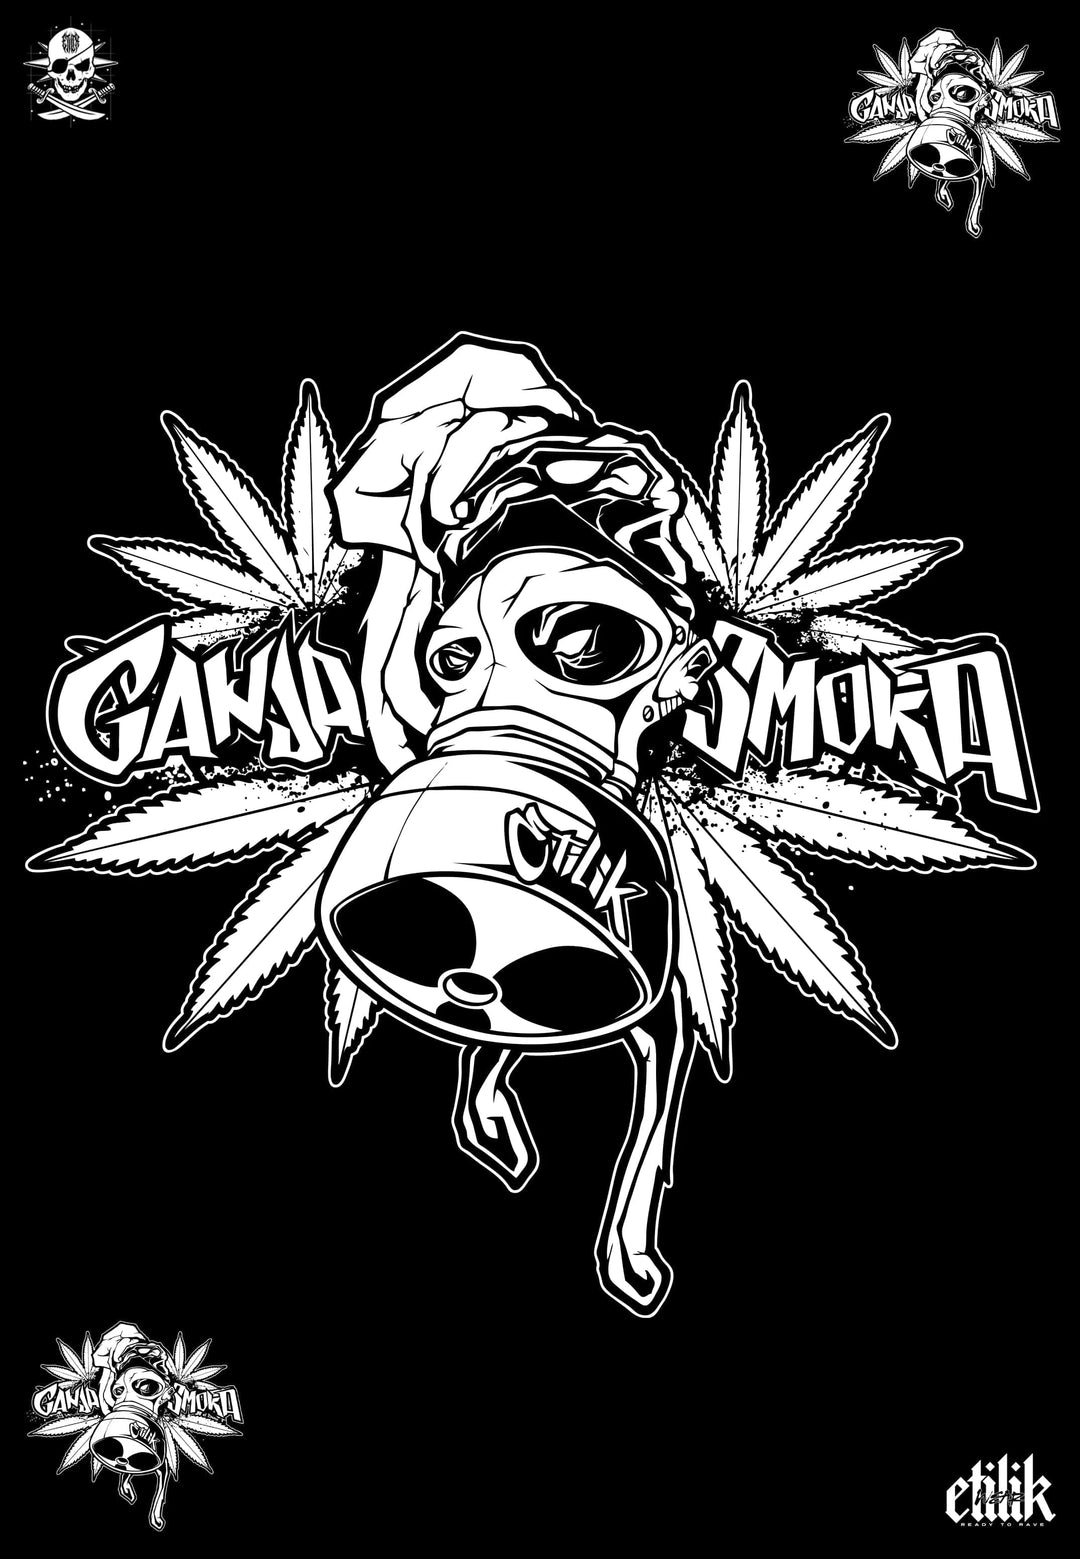 Ganja-Raucher-T-Shirt